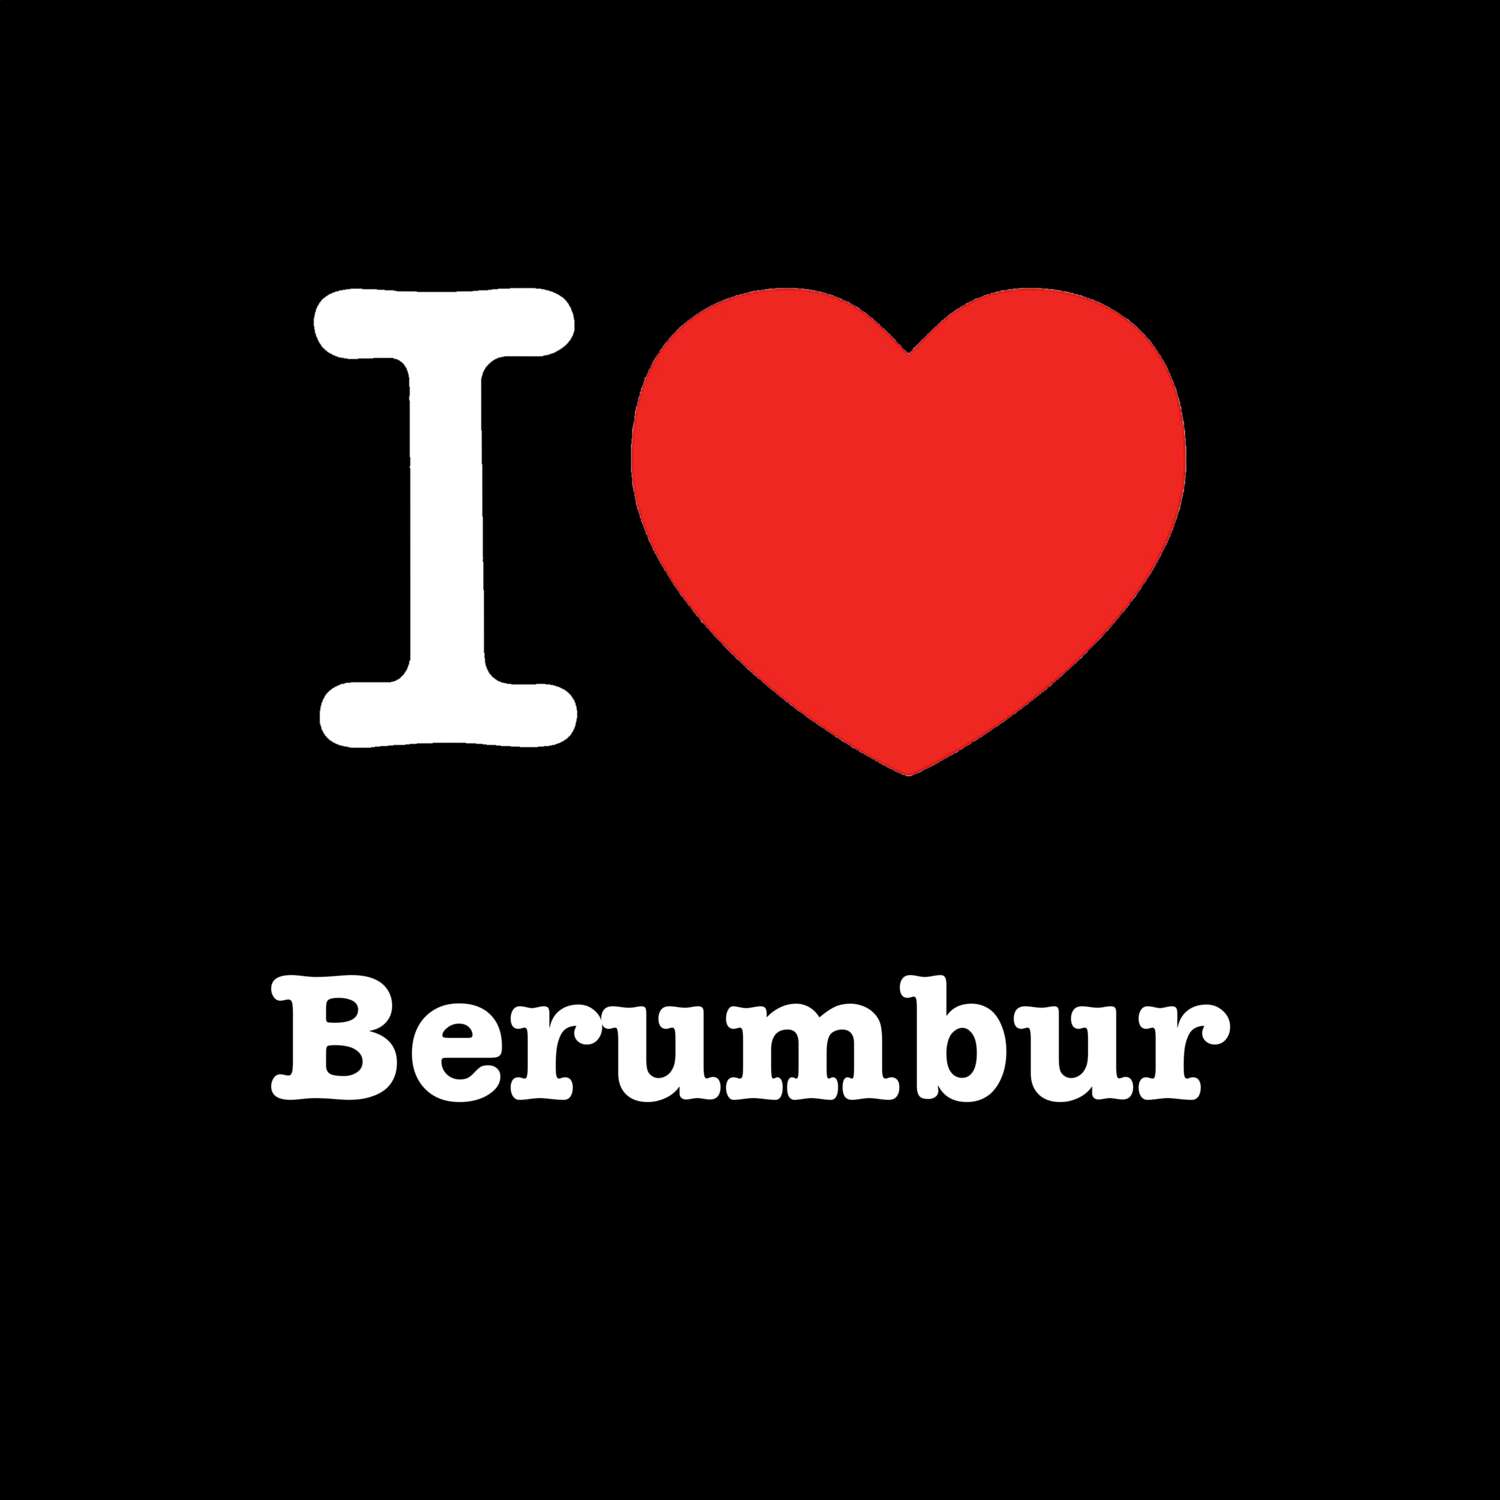 Berumbur T-Shirt »I love«